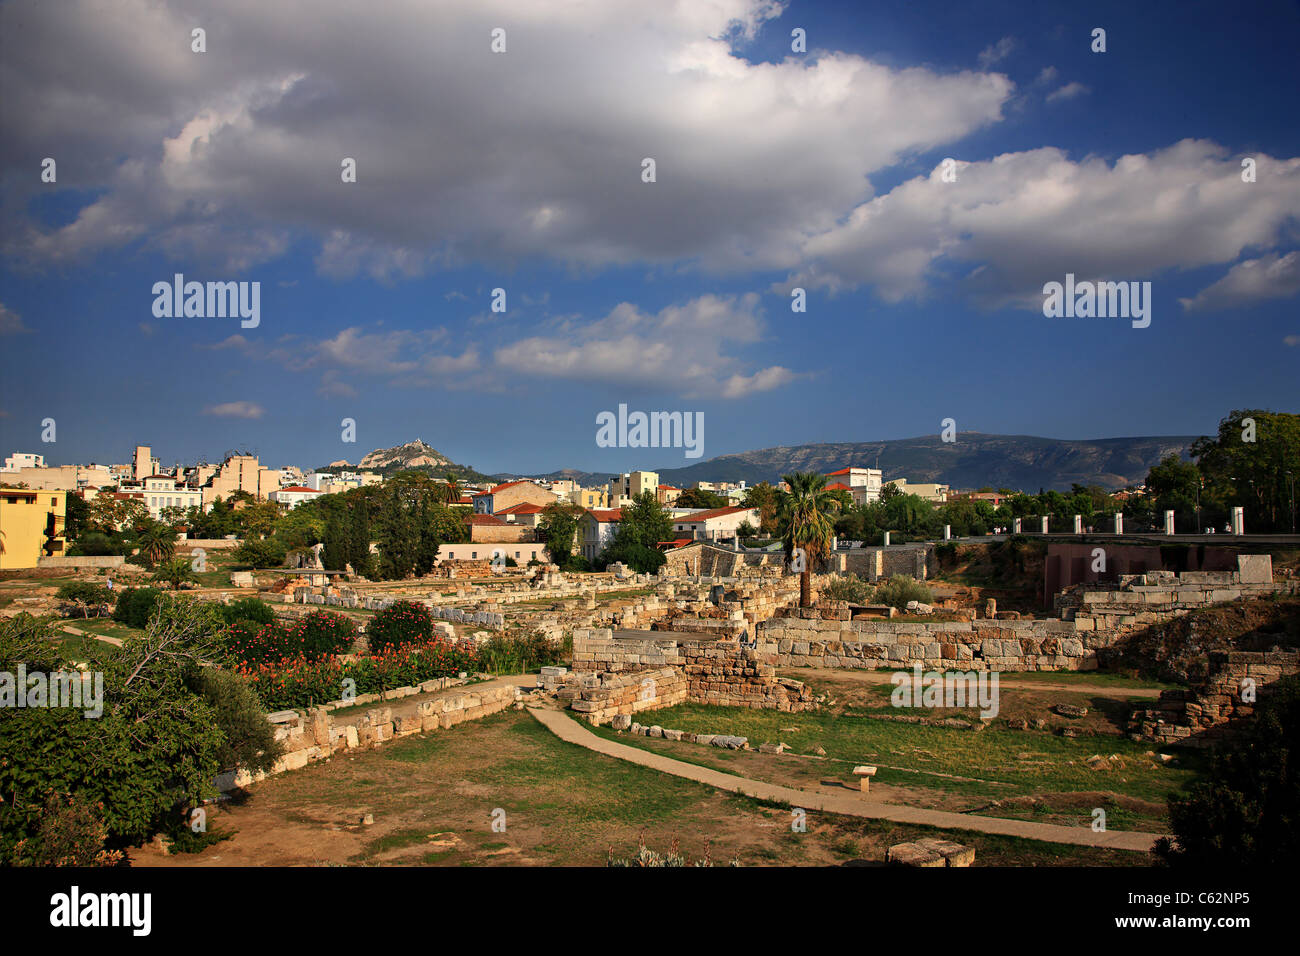 Kerameikos era uno de los más bellos 'suburbs' de la antigua Atenas y su más impresionante Necrópolis. Atenas, Grecia Foto de stock